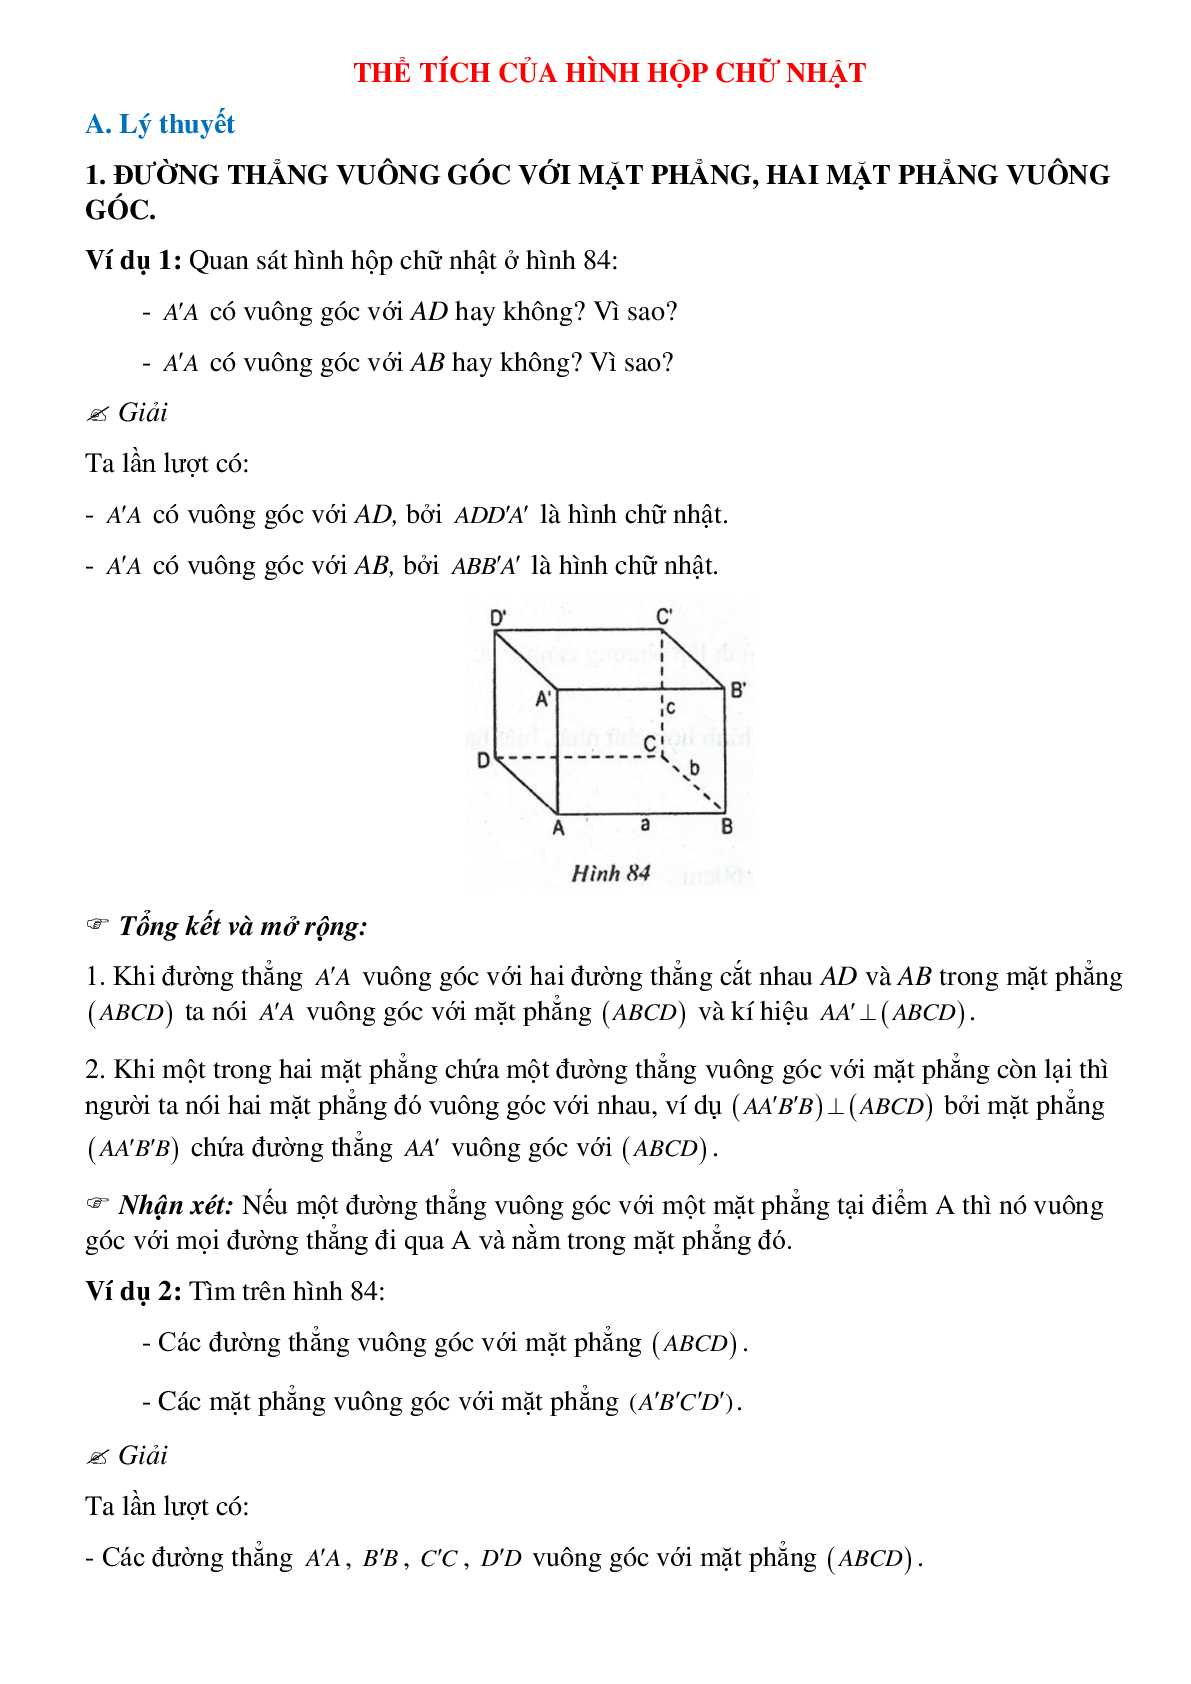 Tổng hợp các dạng toán thường gặp về Thể tích của hình hộp chữ nhật có lời giải (trang 1)